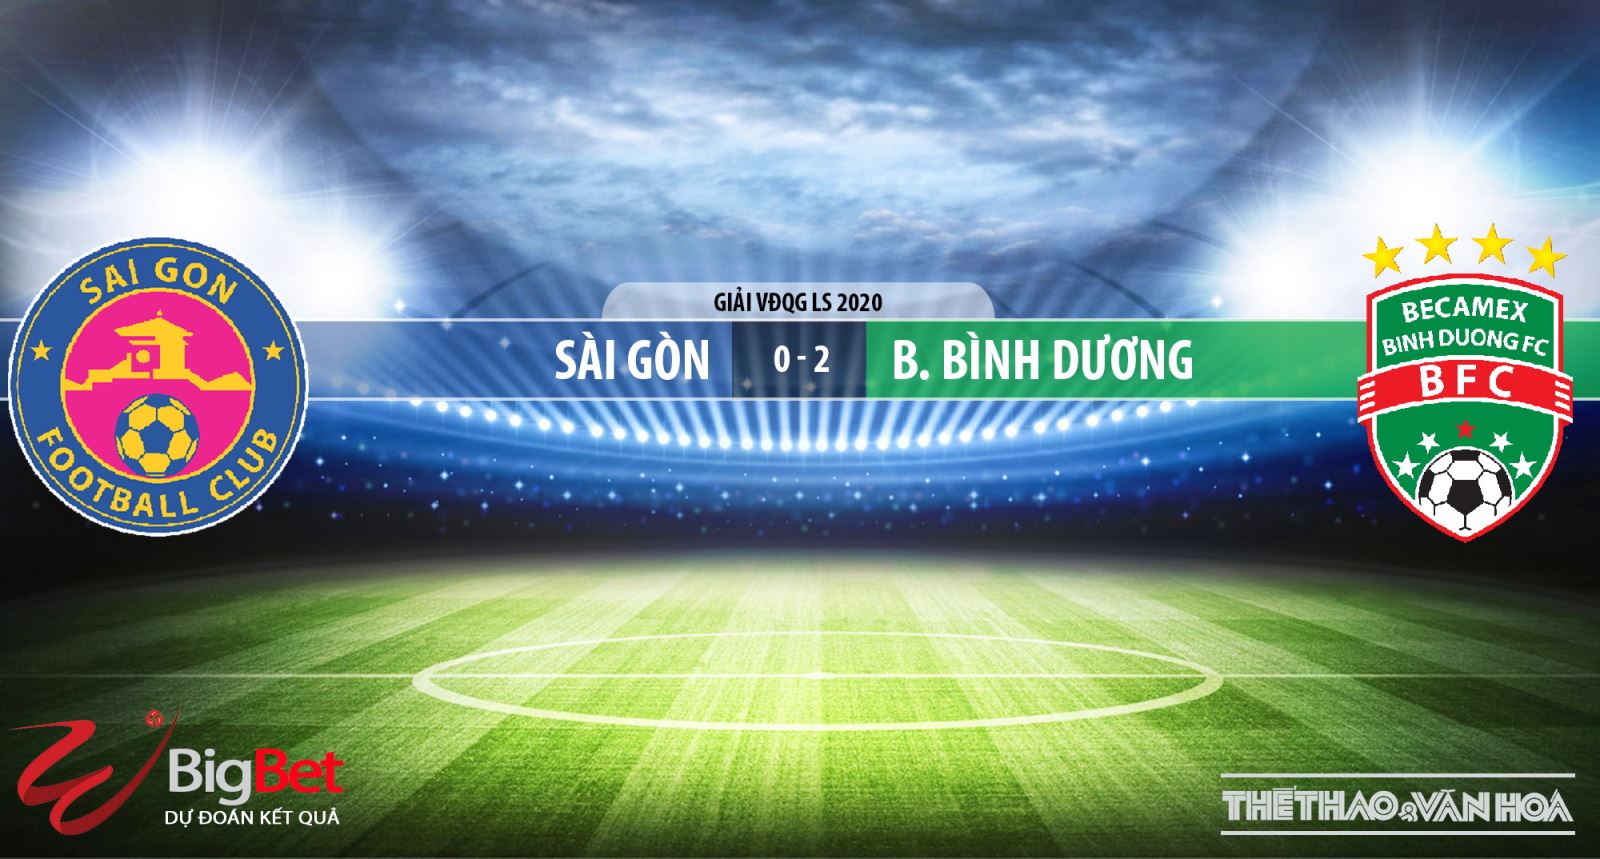 Sài Gòn vs Becamex Bình Dương, Sài Gòn, Bình Dương, trực tiếp bóng đá, nhận định bóng đá bóng đá, kèo bóng đá, BĐTV